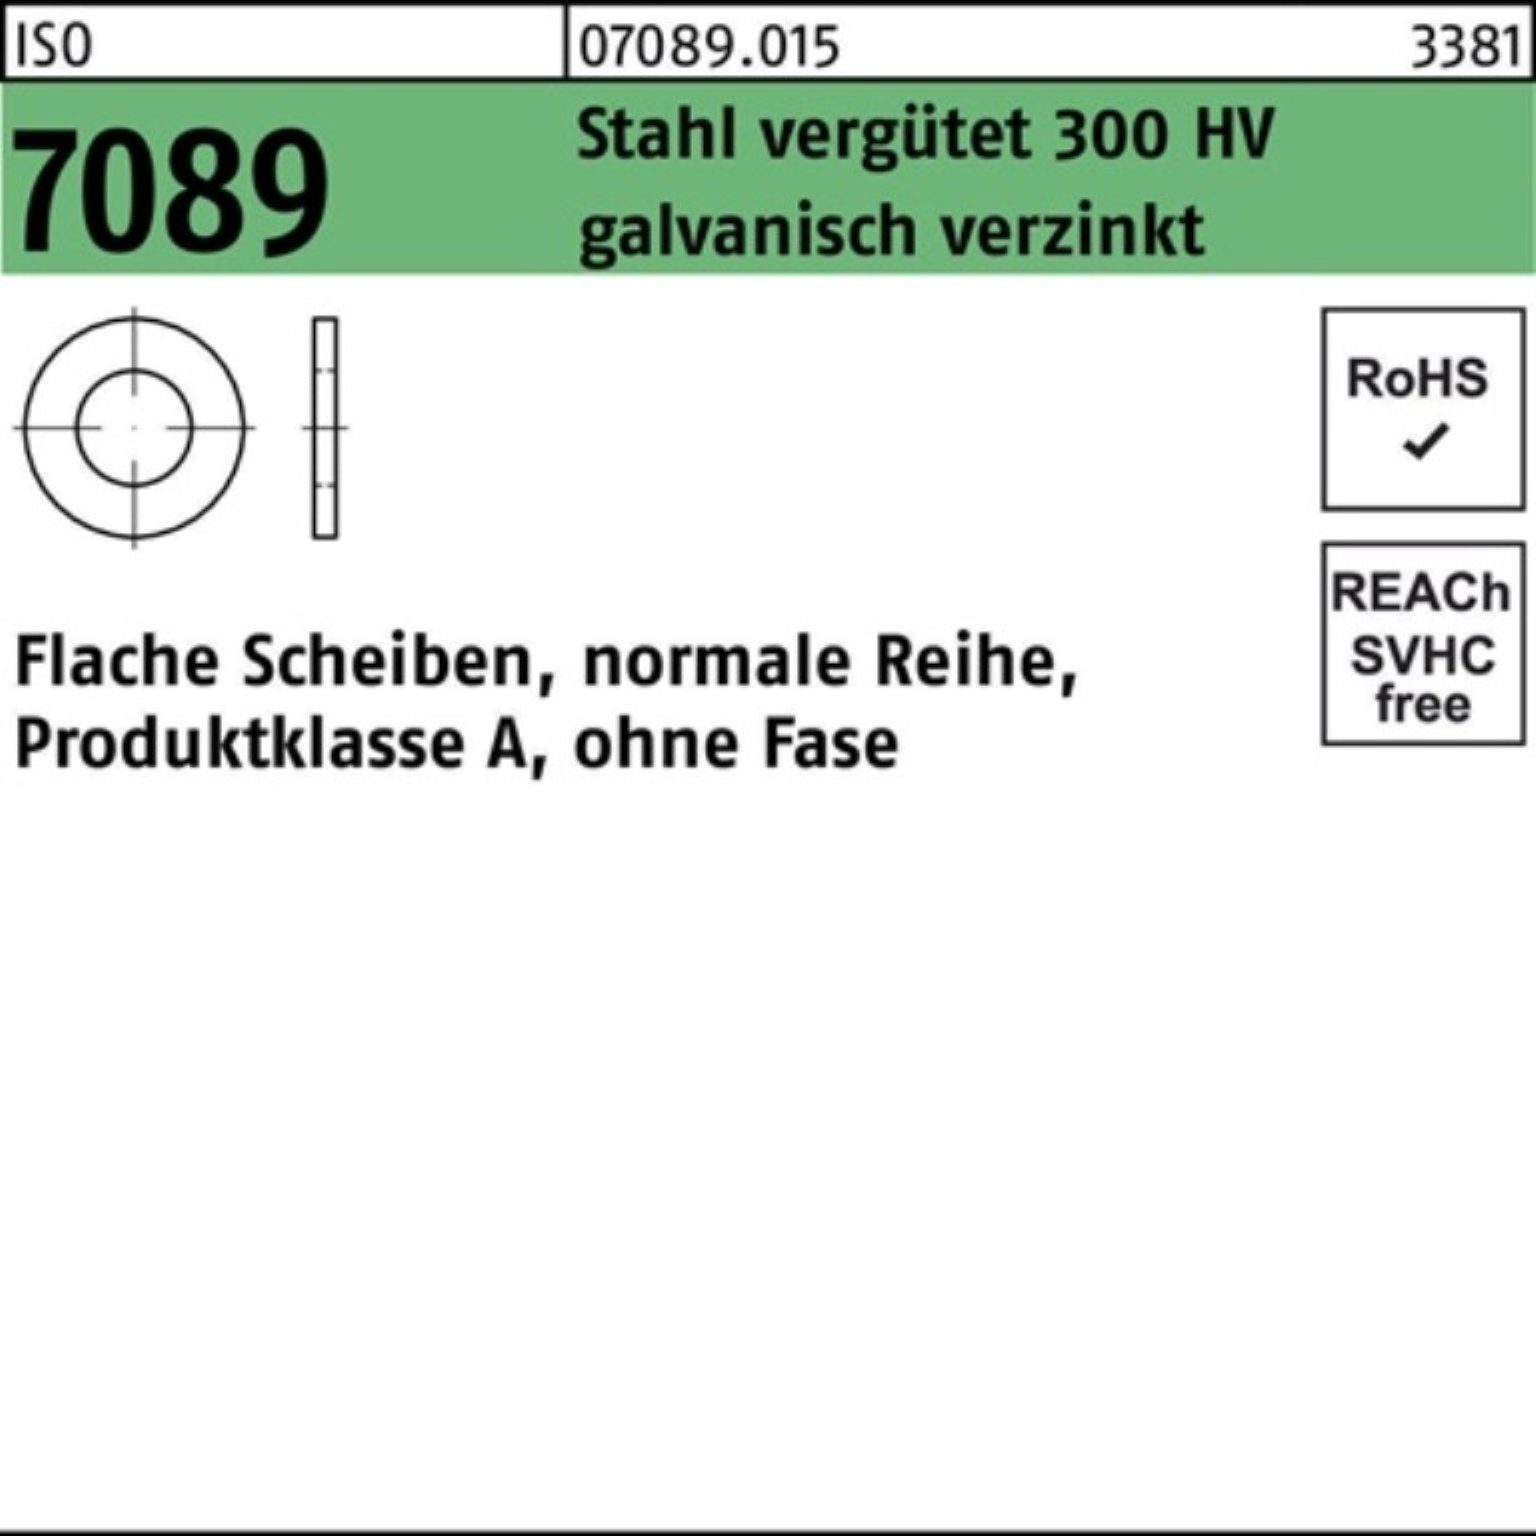 【Aufrichtigkeit】 Bufab Unterlegscheibe ISO 7089 verg. 200er HV o.Fase Pack Unterlegscheibe 8 300 galv.v Stahl